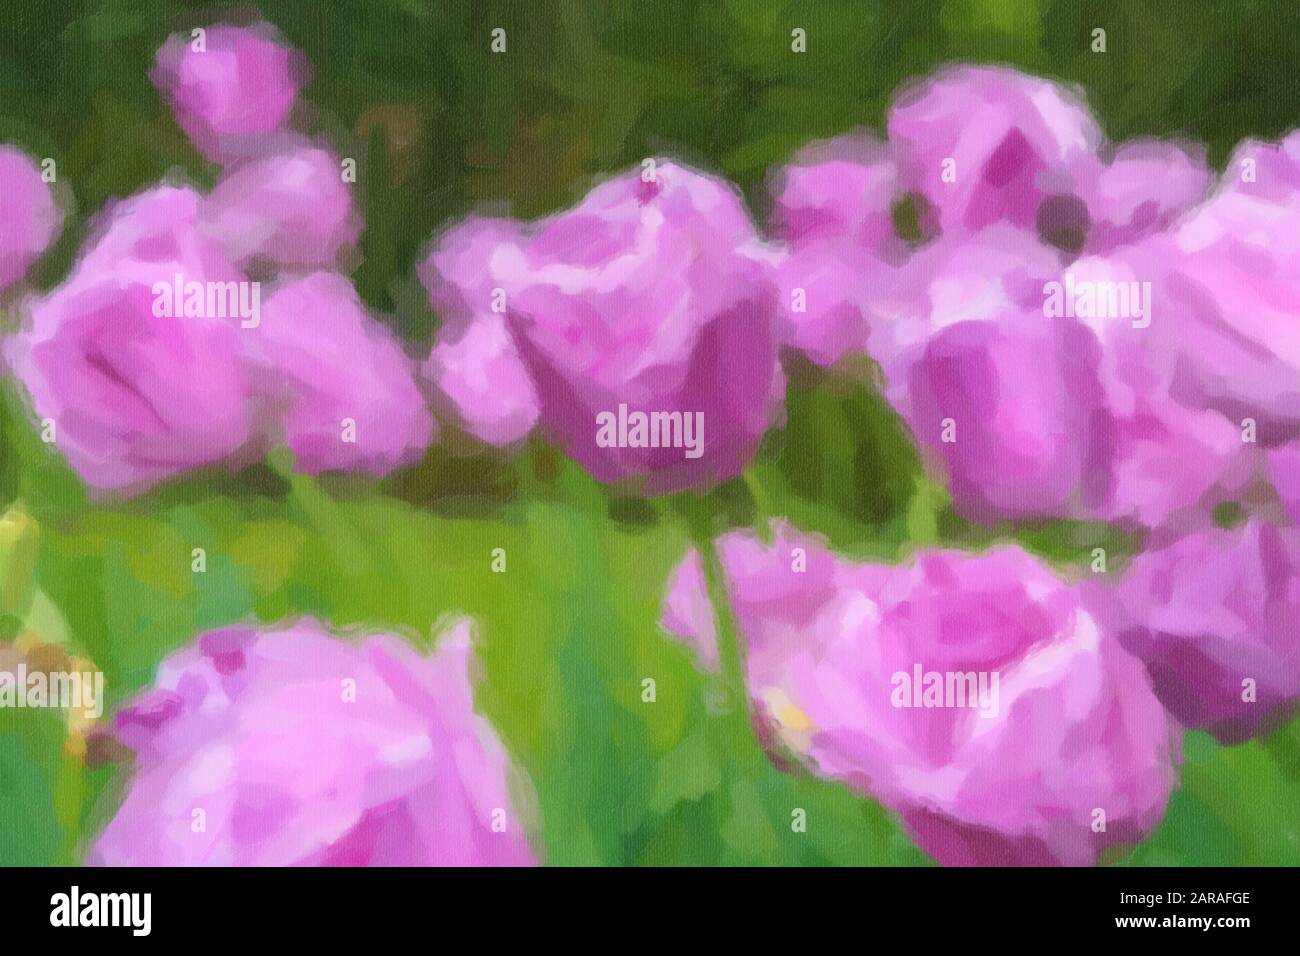 Aquarelle illustration peinte des tulipes violettes aux Pays-Bas.Belle peinture à l'huile du champ de fleur de tulipe en Hollande.papier peint floral artistique Banque D'Images